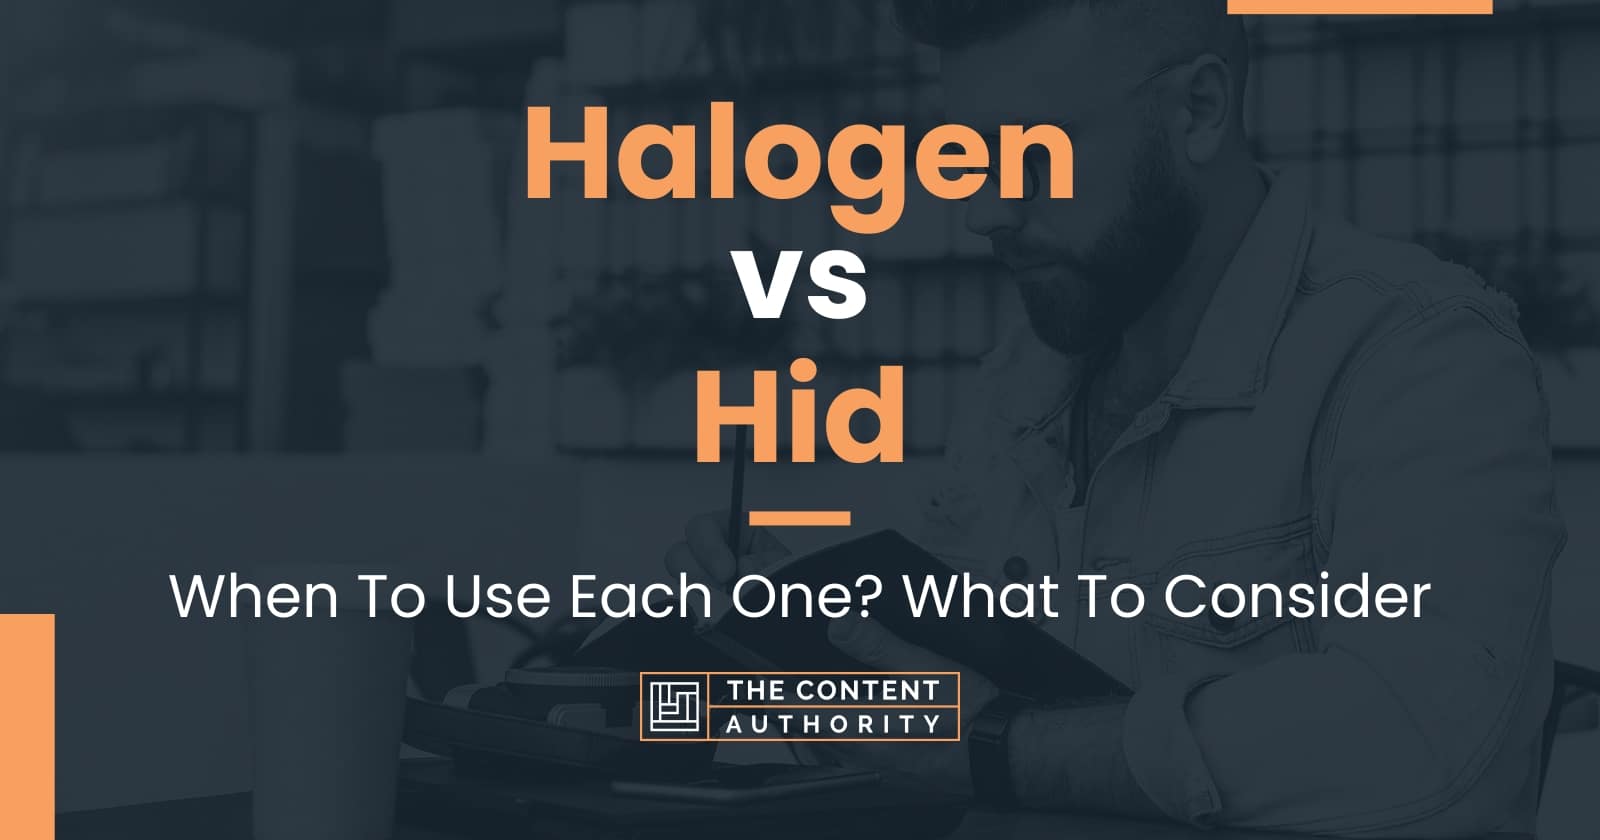 hid vs halogen heat